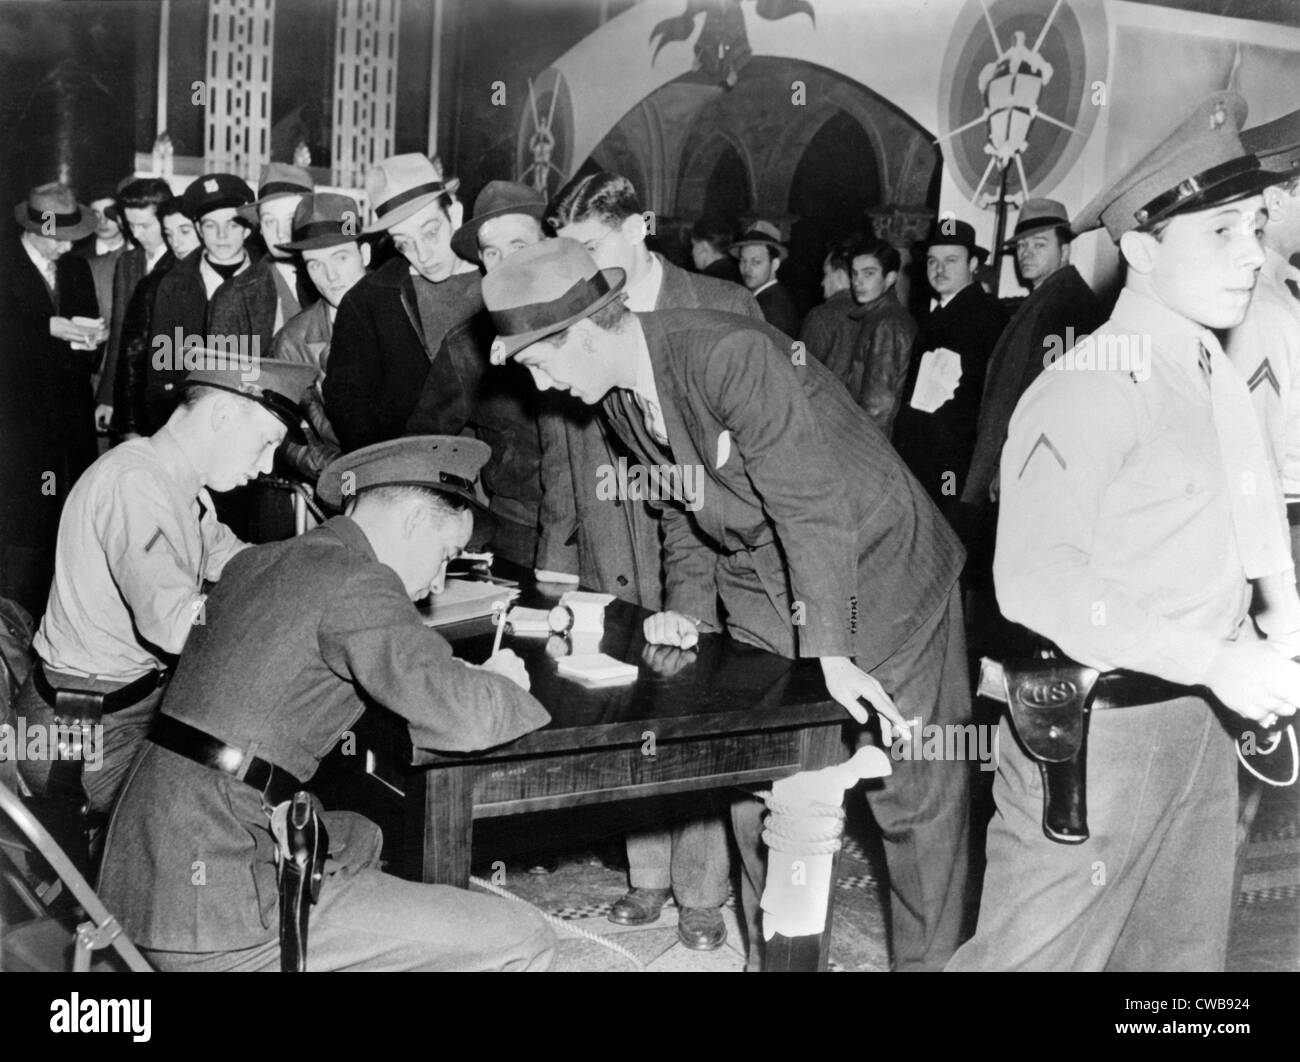 Chapeaux des années 1940 Banque d'images noir et blanc - Alamy